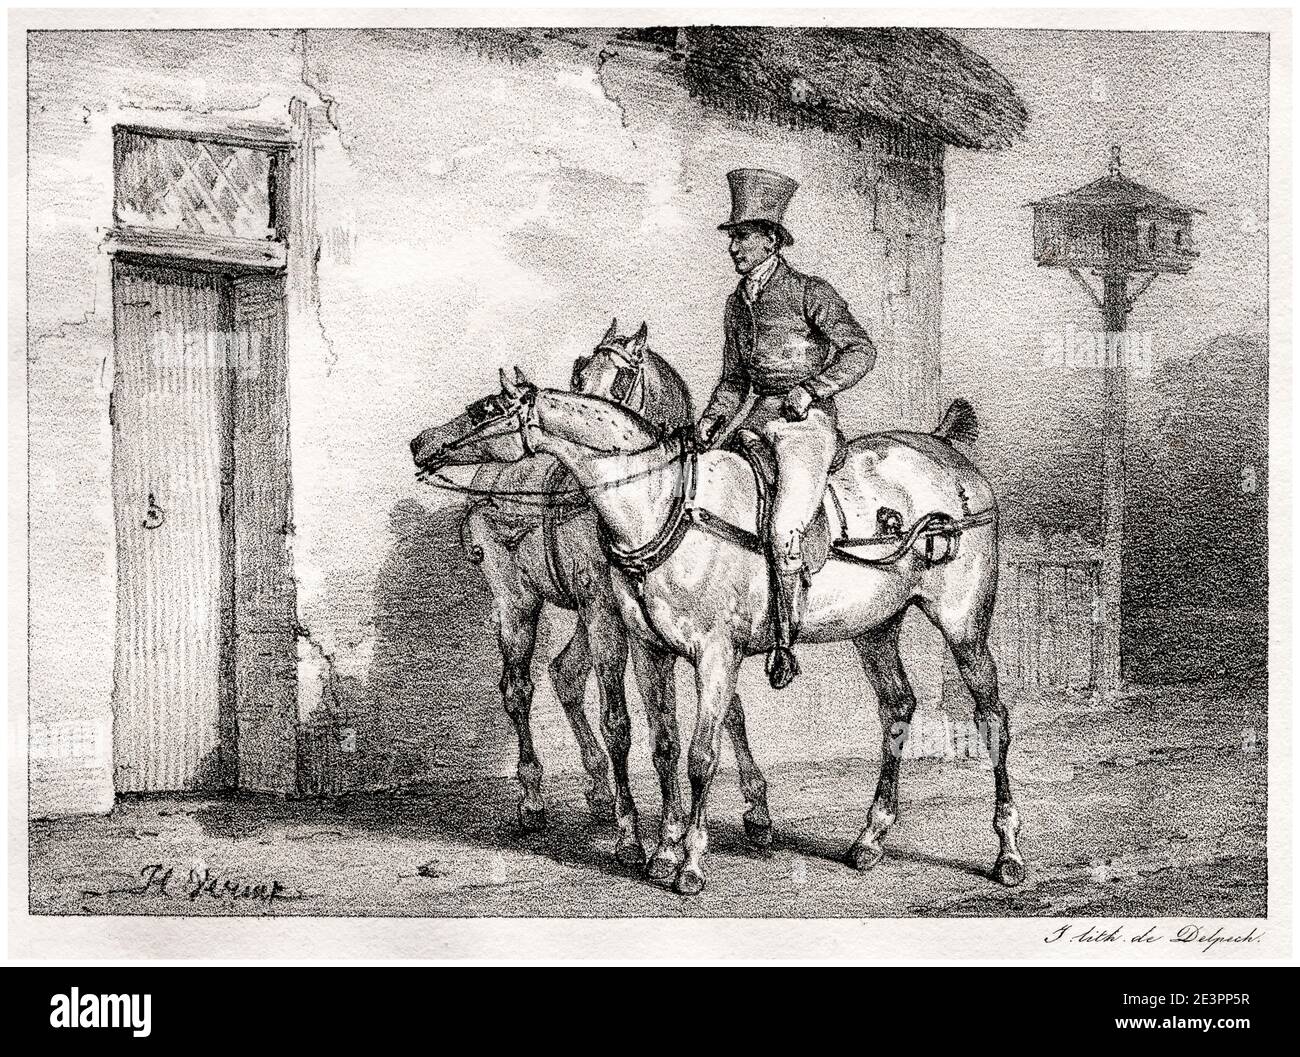 Horace Vernet, British postal Horses (chevaux de poste anglais), impression lithographique, 1823 Banque D'Images